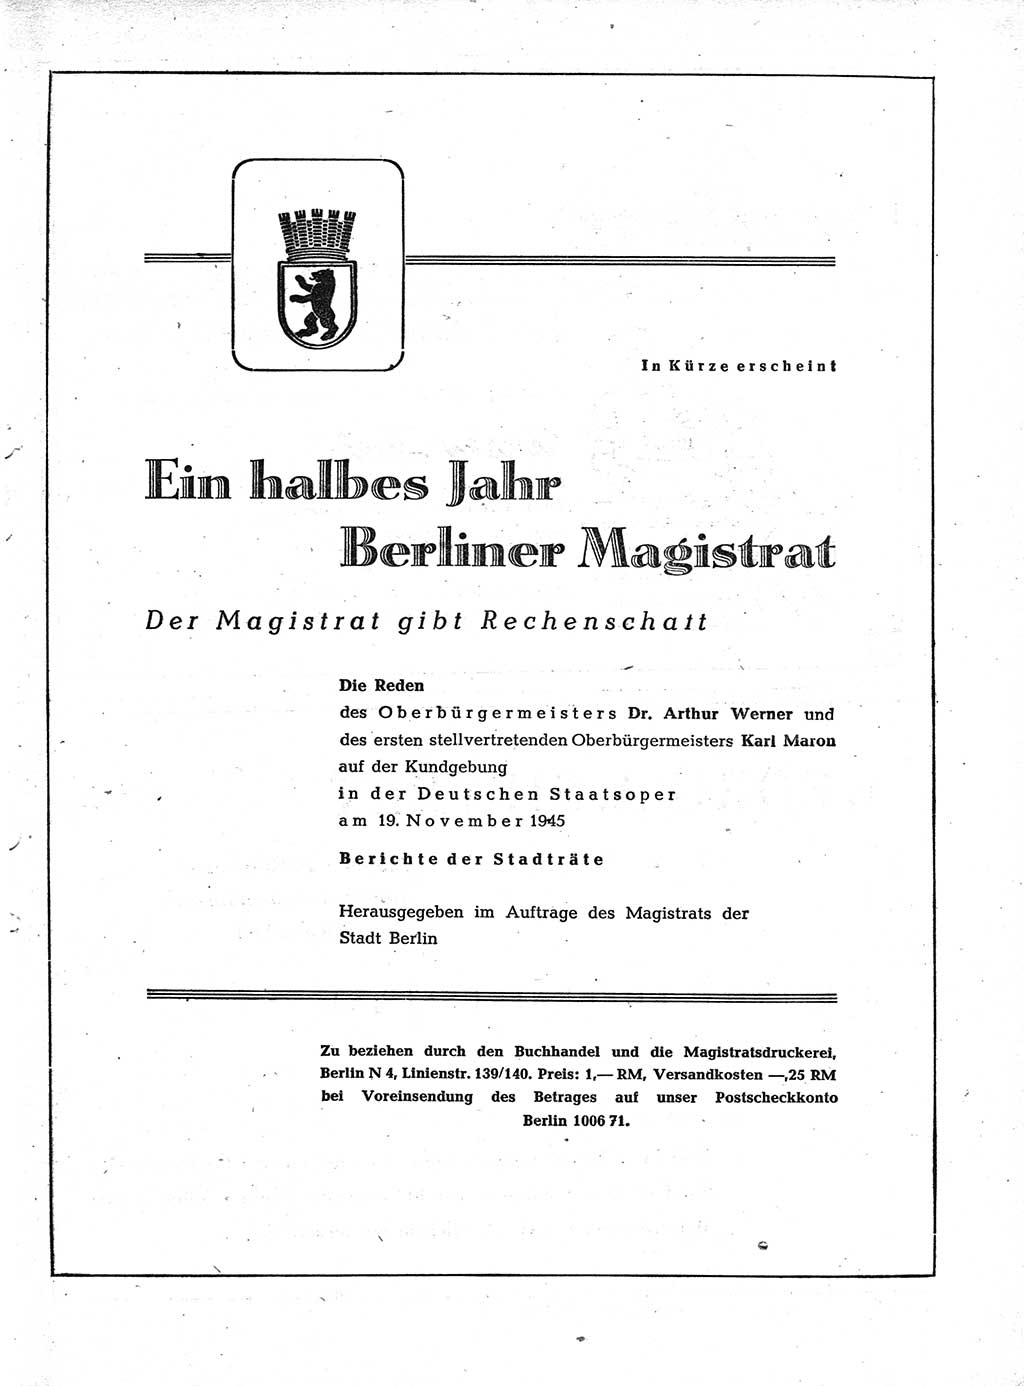 Verordnungsblatt (VOBl.) der Stadt Berlin, für Groß-Berlin 1946, Seite 11 (VOBl. Bln. 1946, S. 11)